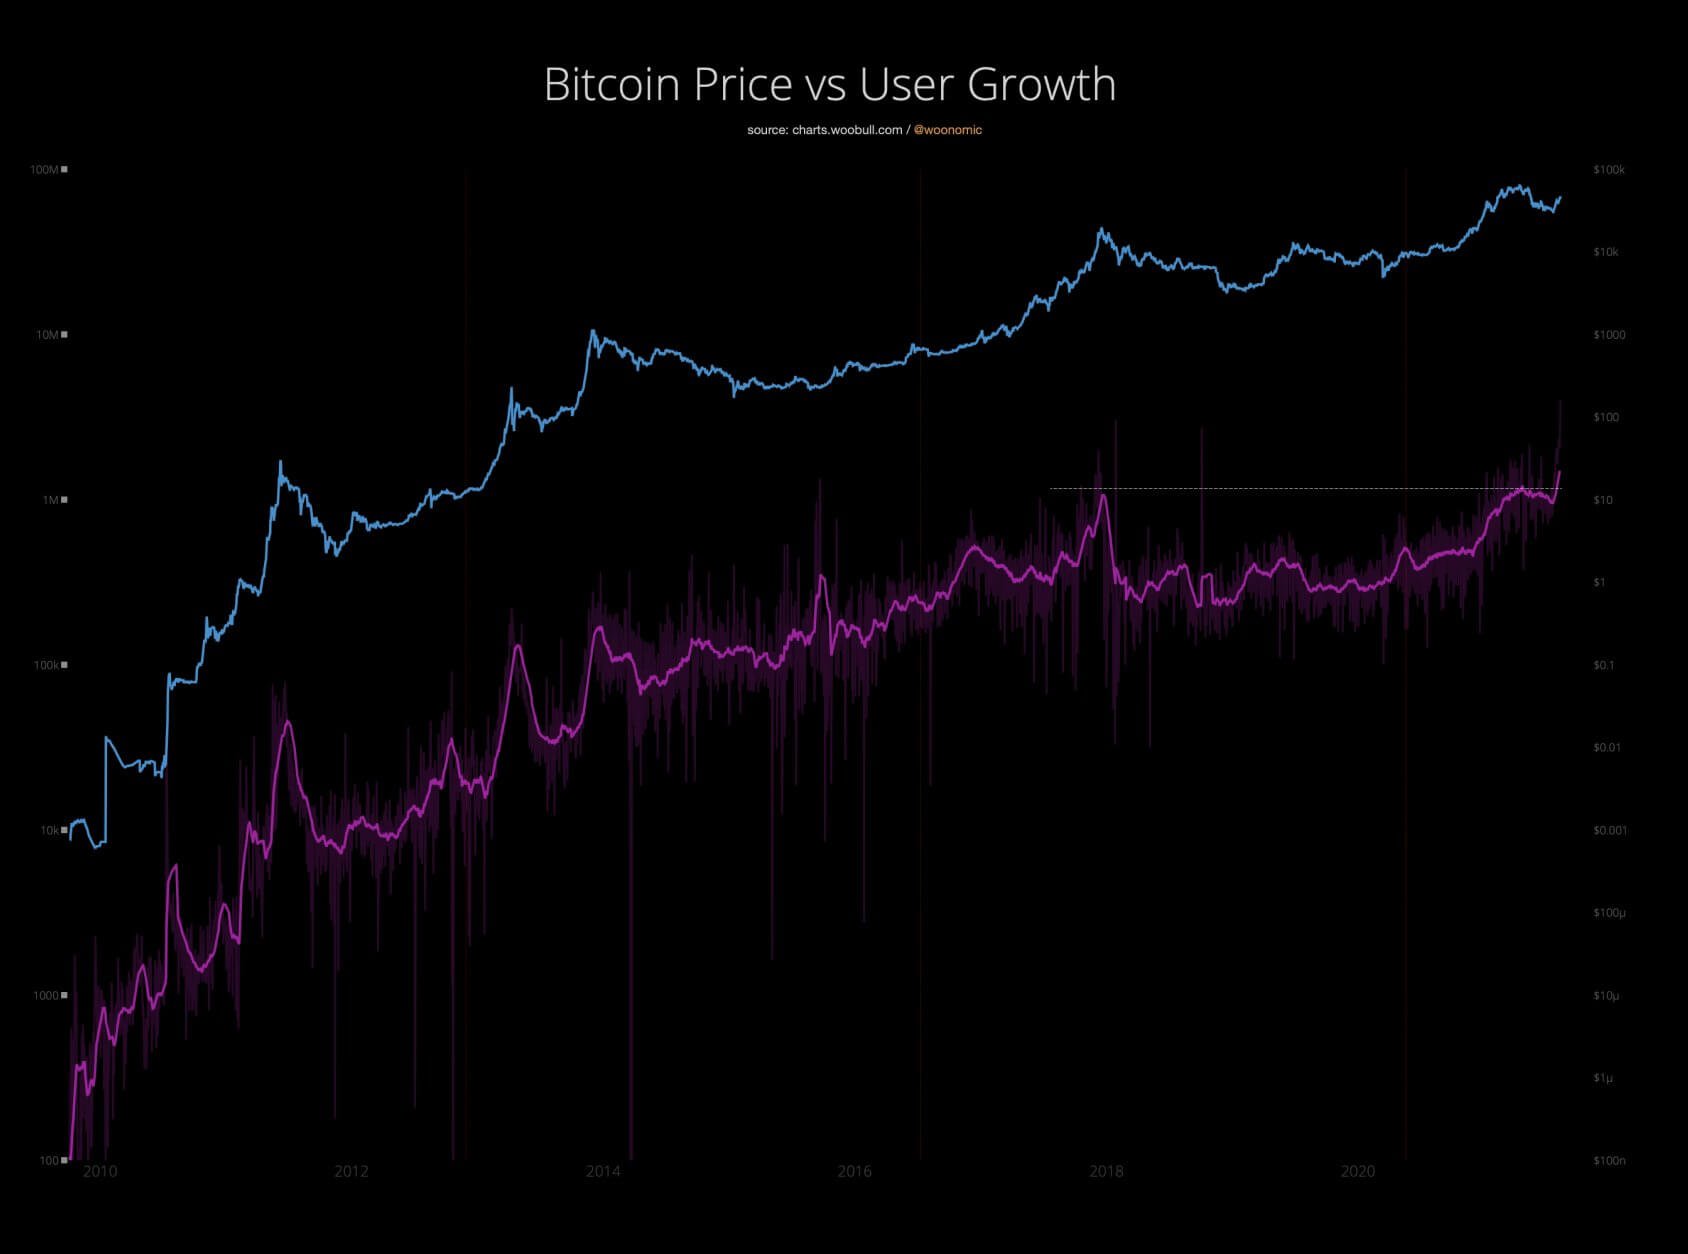 růst počtu uživatelů bitcoinu